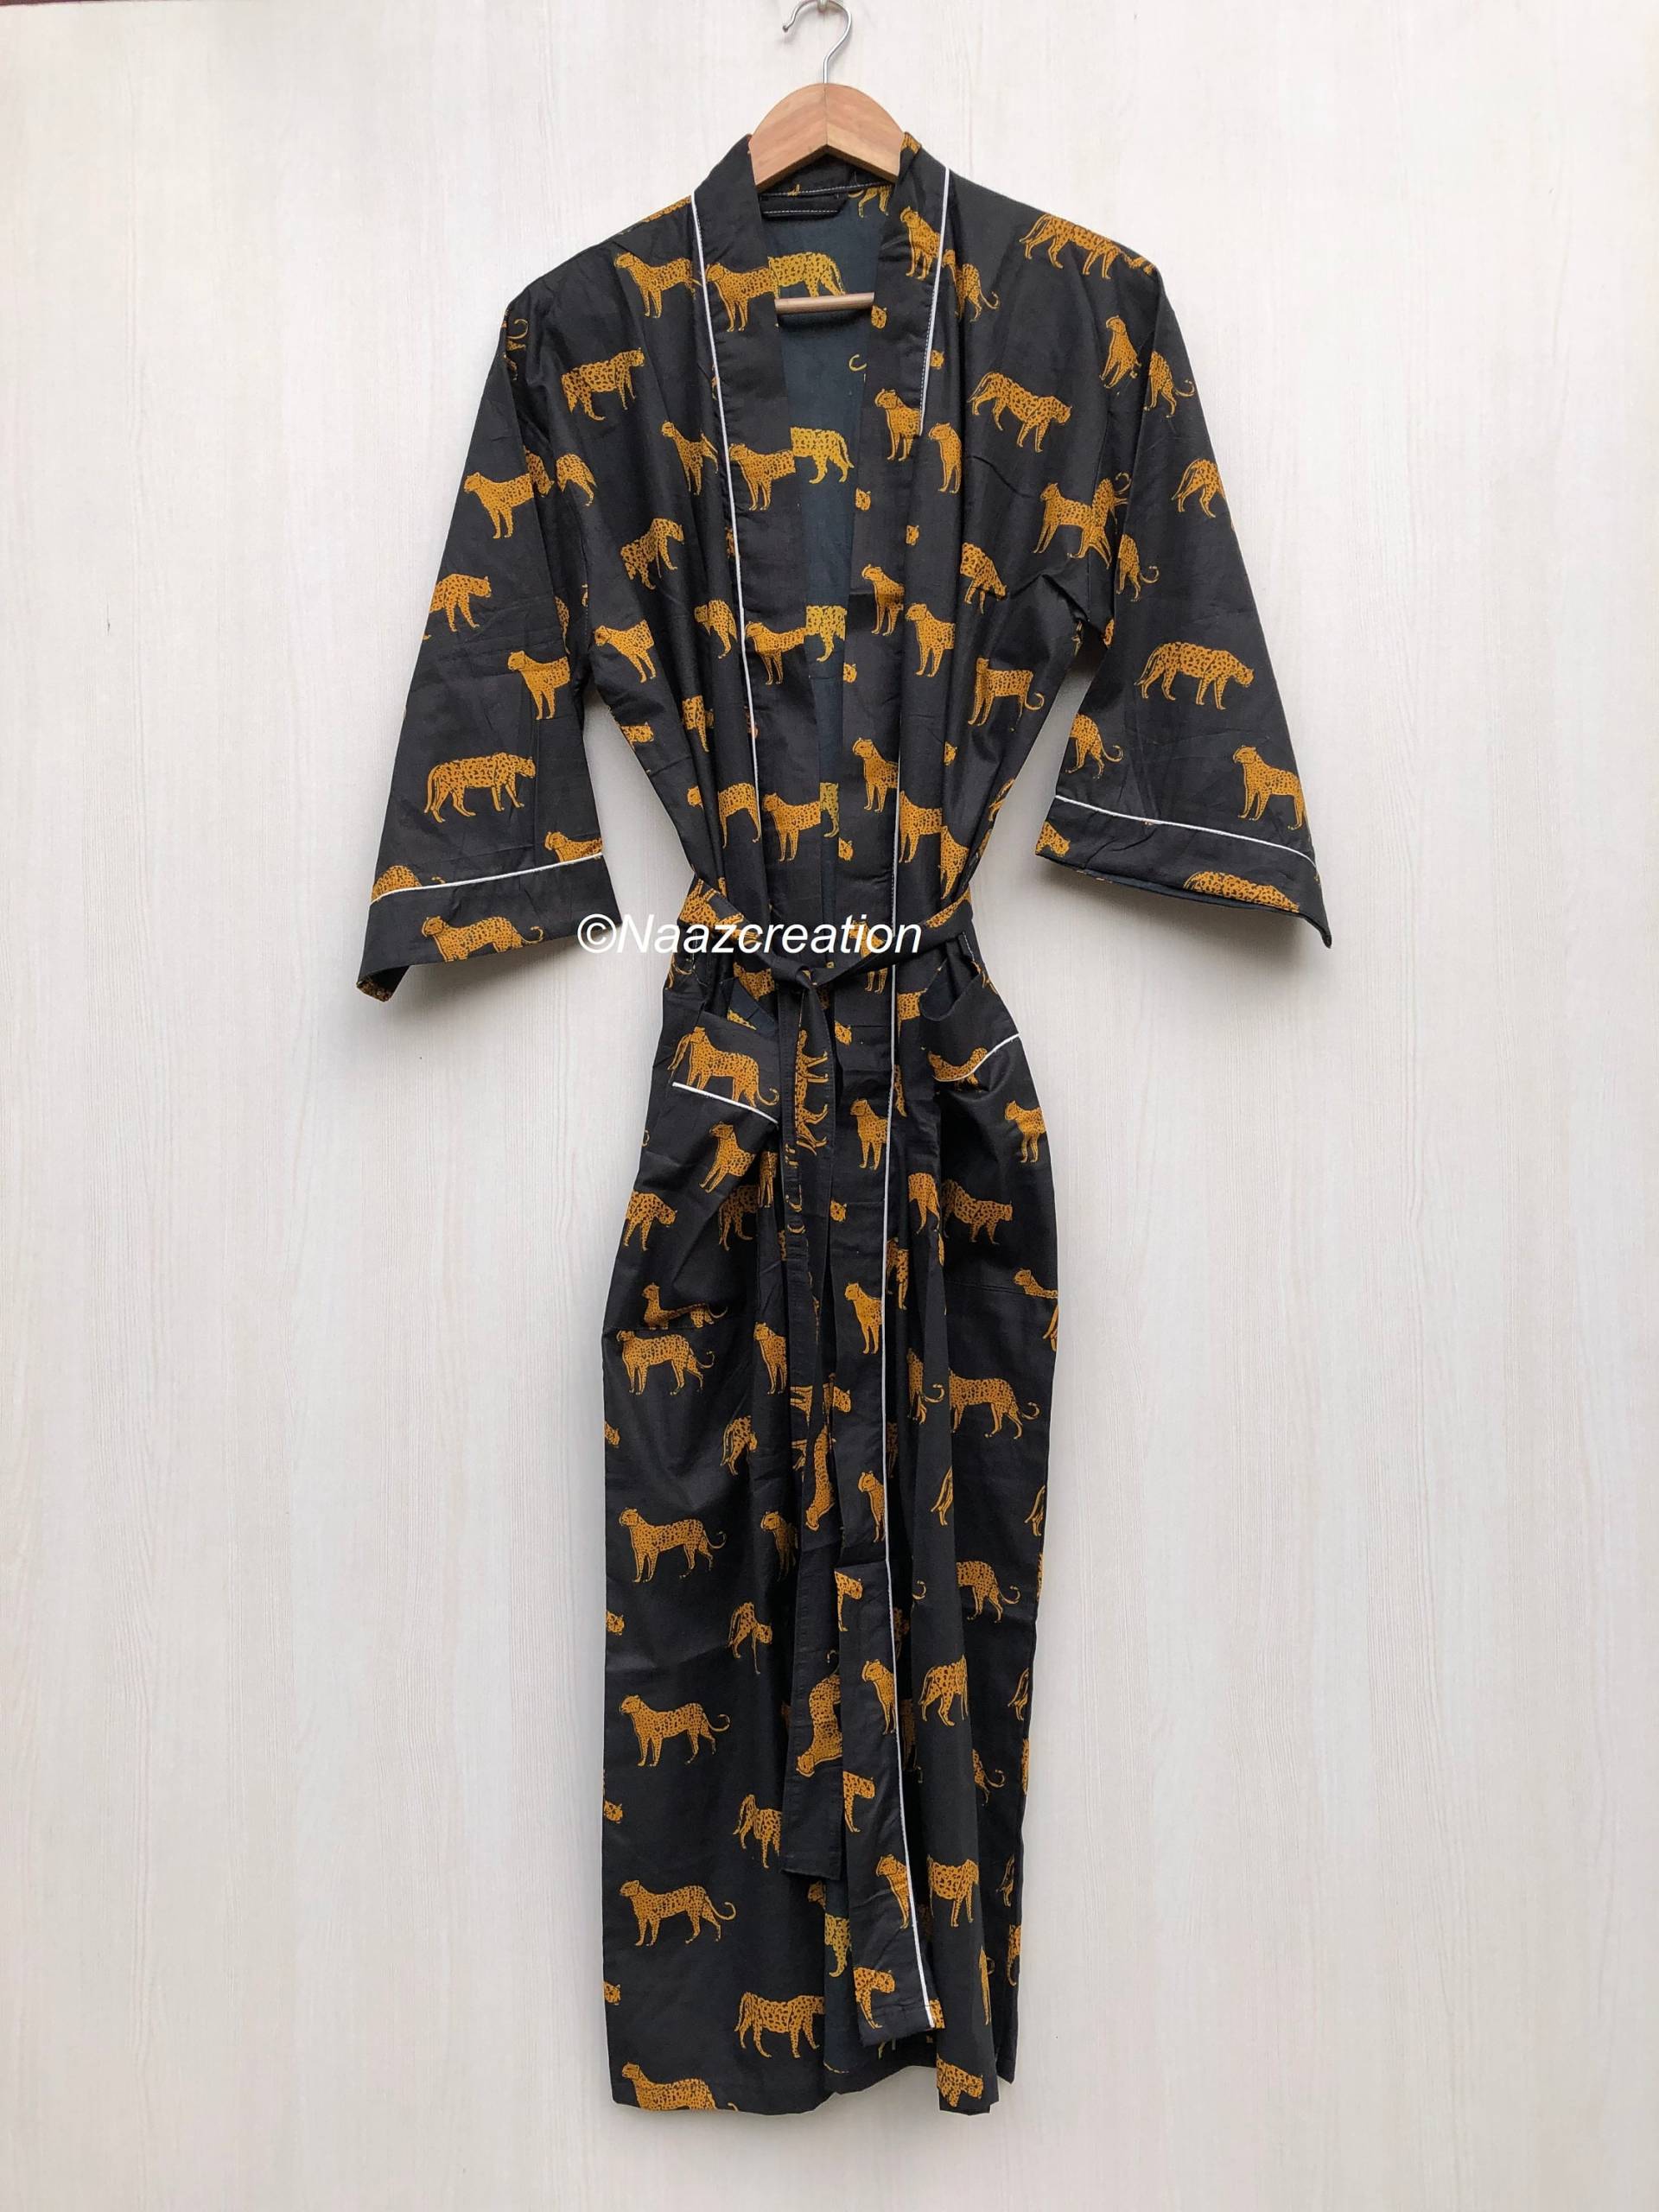 Express-Lieferung - Baumwoll-Kimono-Roben, Tigerdruck-Kimono, Weiche Und Bequeme Bademäntel, Wickelkleid, Hausmantel-Robe von Naazcreation